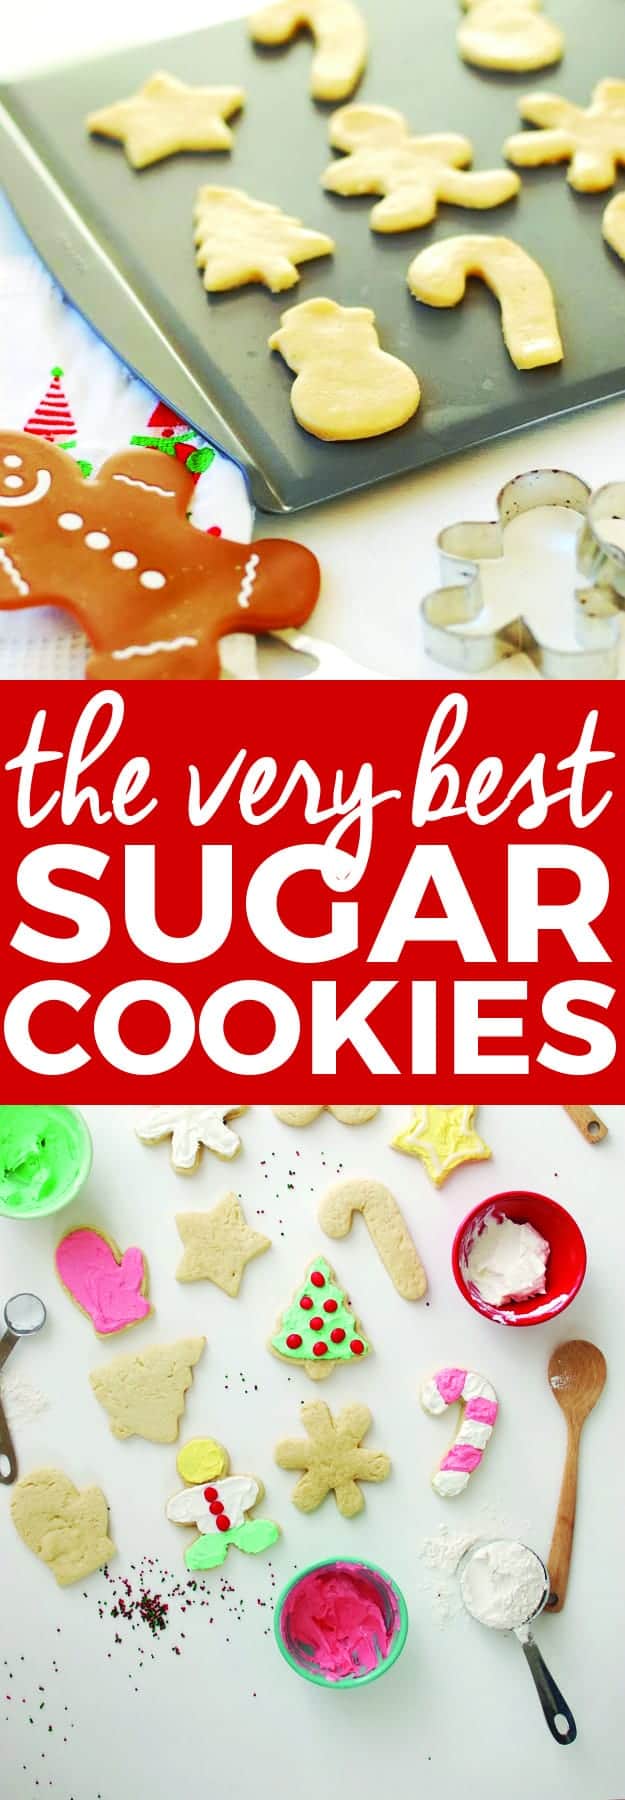 Best Sugar Free Sugar Cookie Recipe : Best-Tasting Sugar Cookie Icing,american Cuisine,Deserts ...